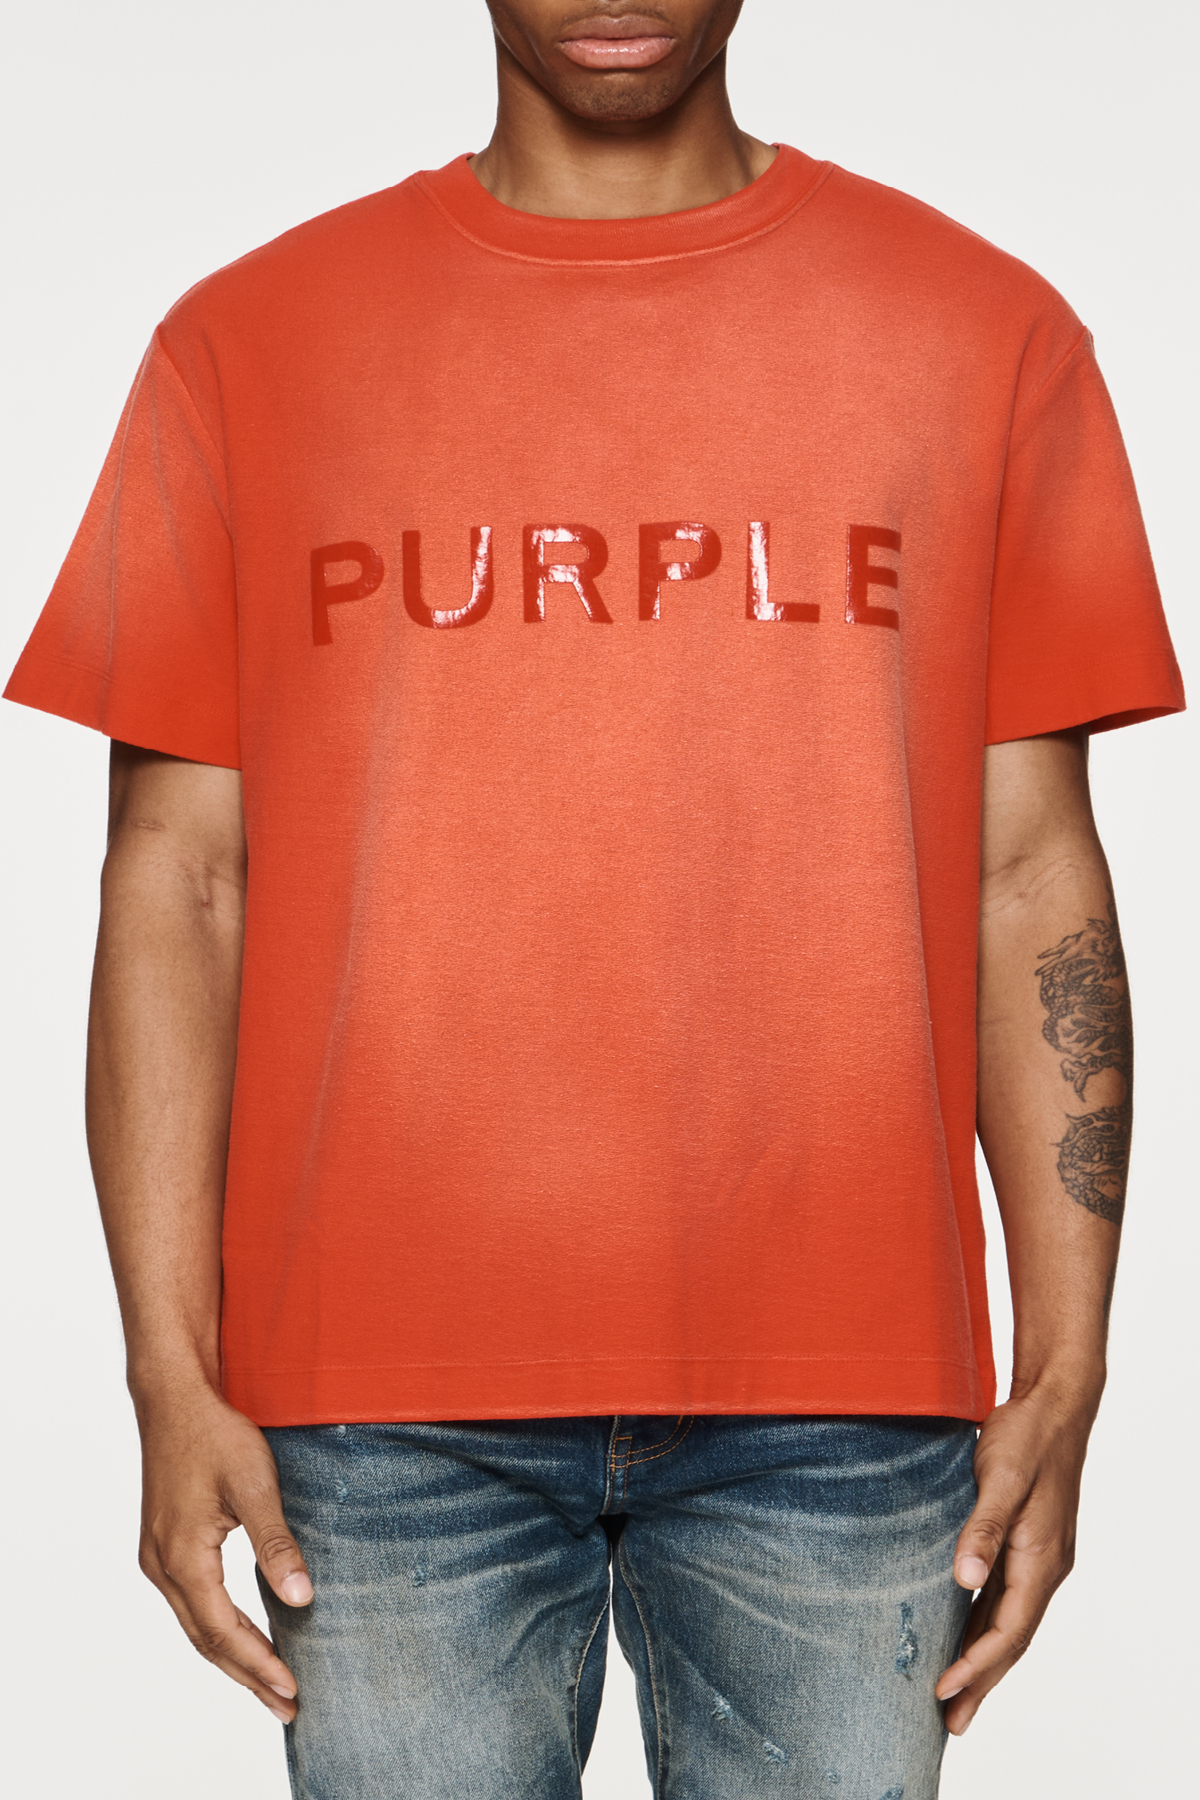 Purple Brand Wordmark Tee - Red